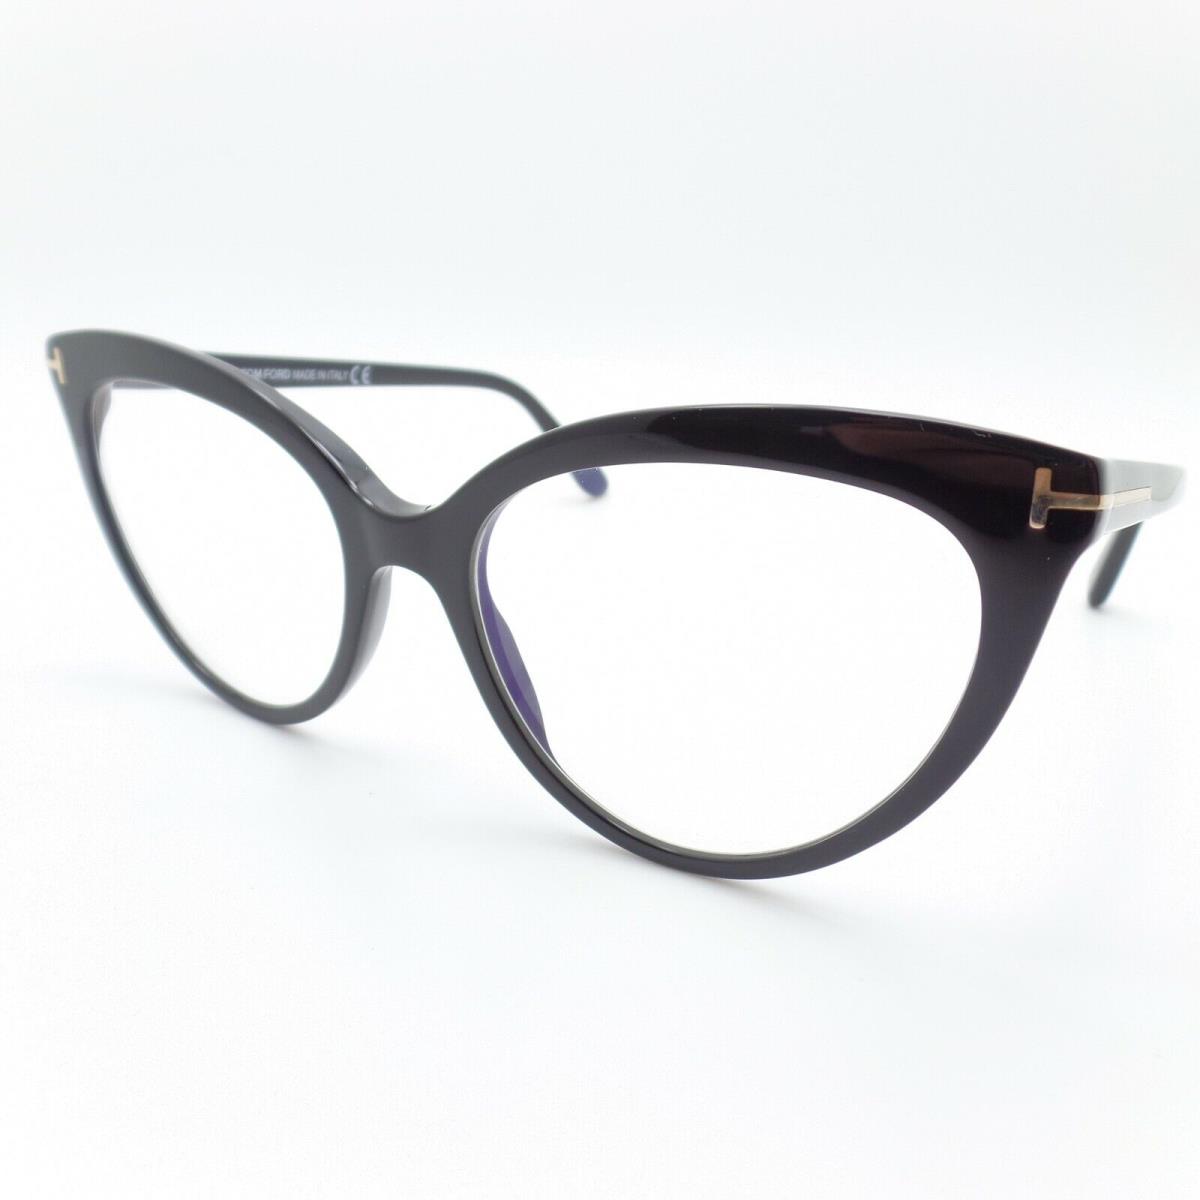 Tom Ford 5674 001 54 Black Eyeglasses Frames Blue Block Lens